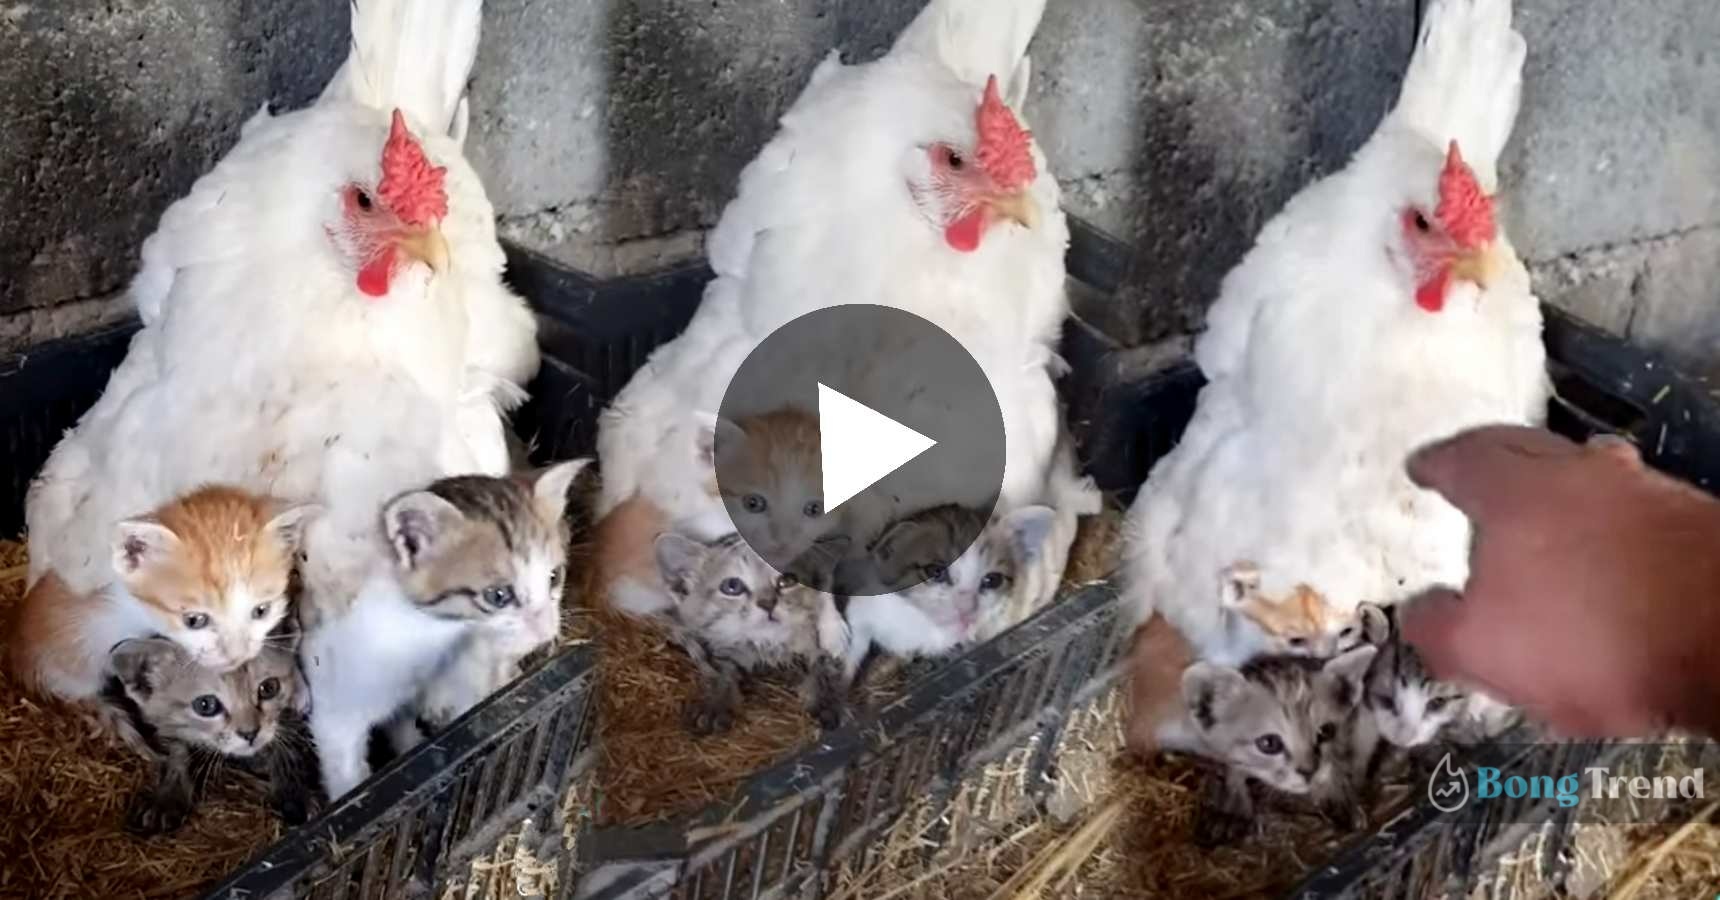 Chicken keeping little cats warm viral video